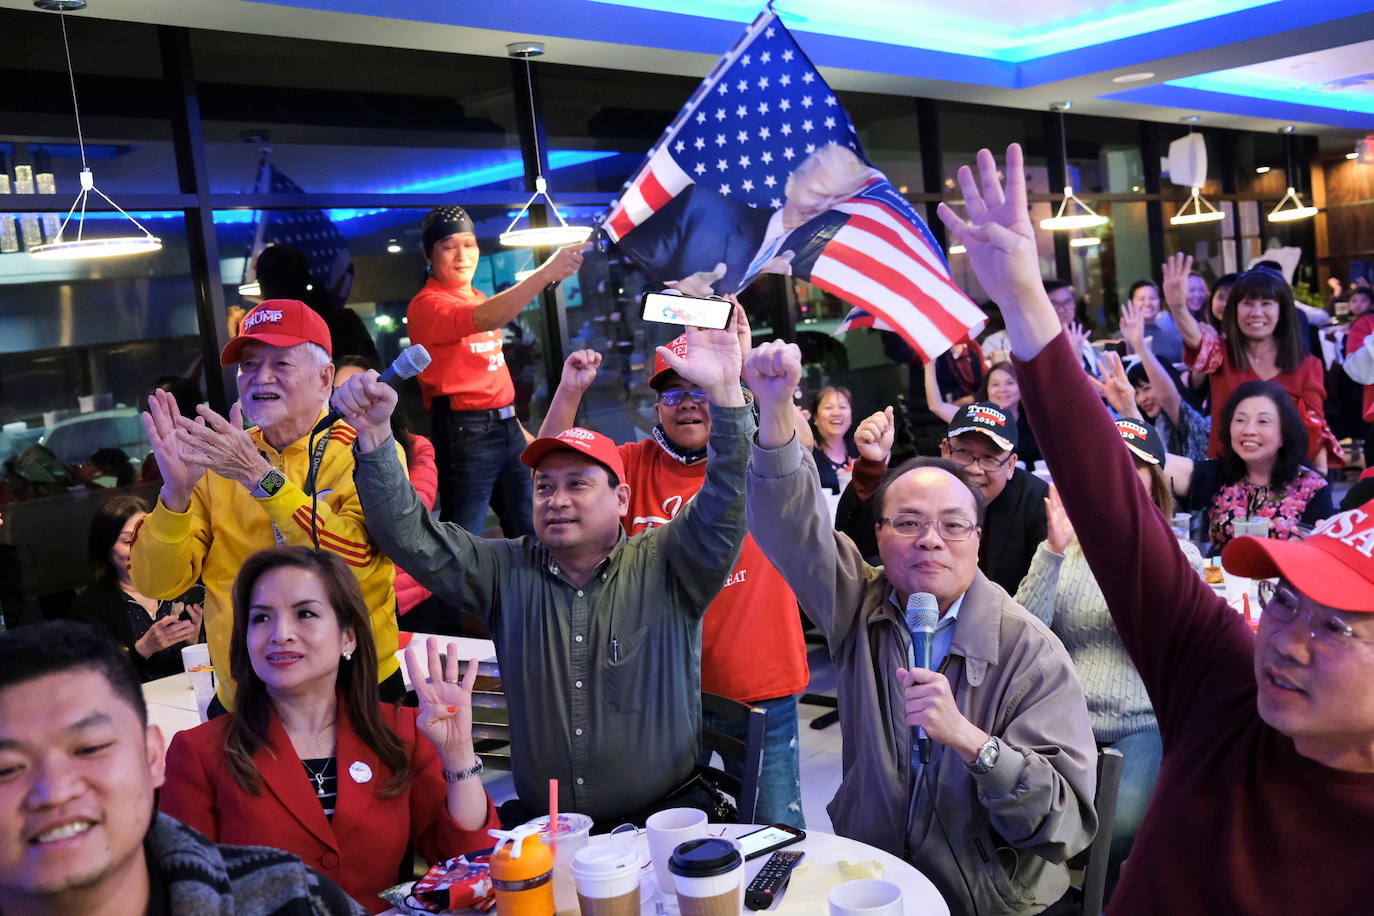 Los estadounidenses vietnamitas partidarios de Trump se reúnen durante una fiesta de vigilancia electoral en Houston, Texas.